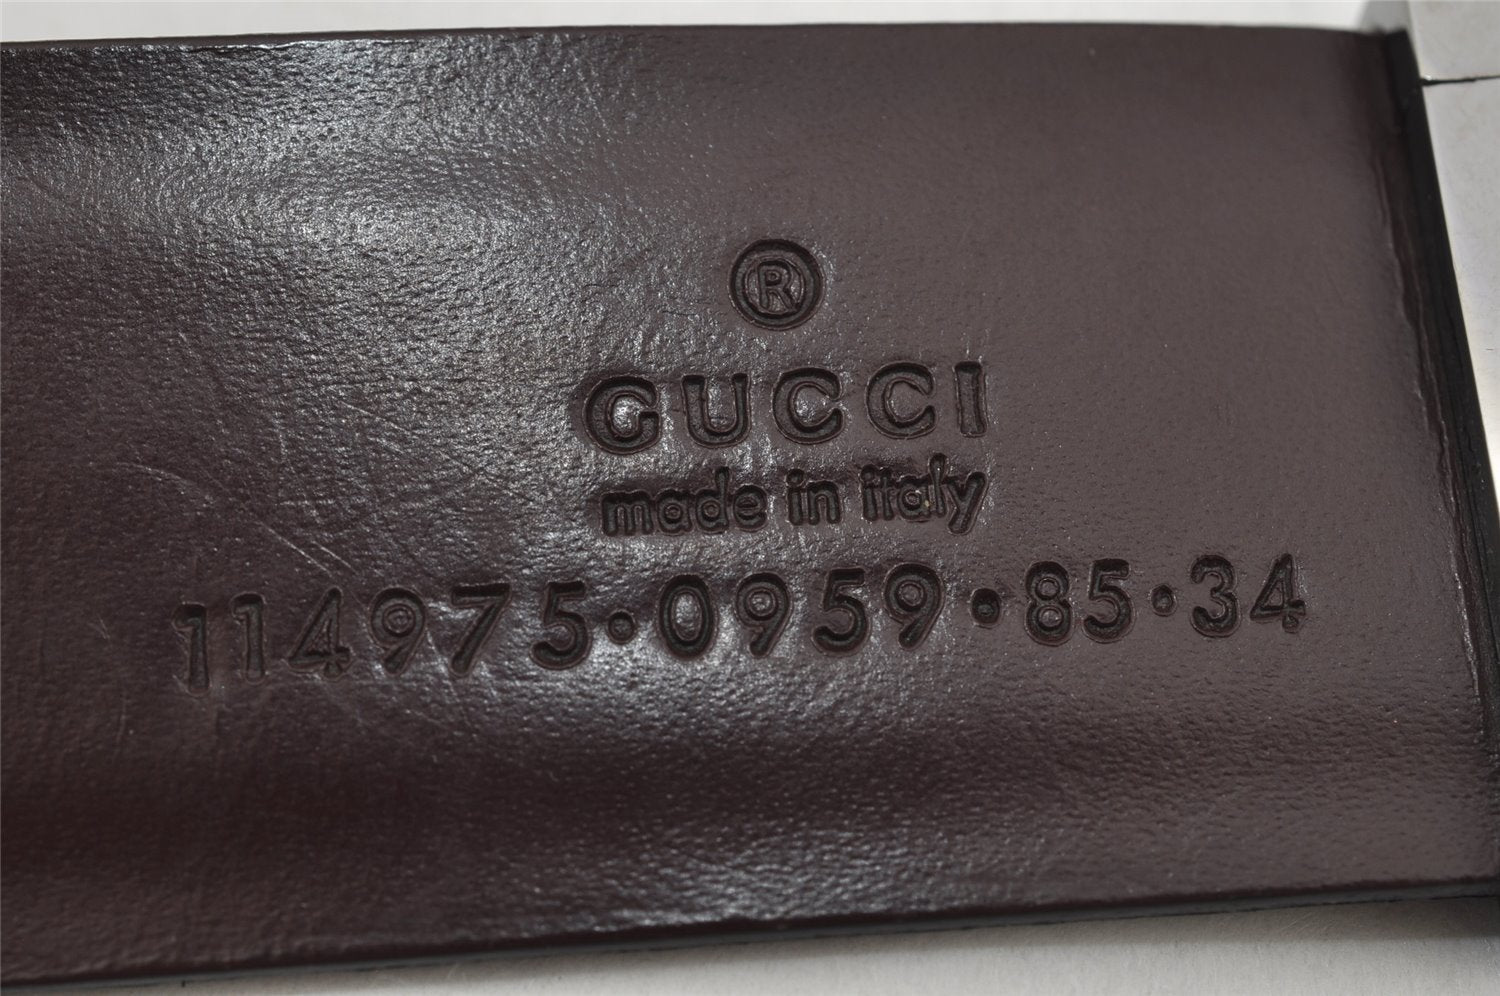 Authentic GUCCI Vintage Belt Leather Size 85cm 33.5